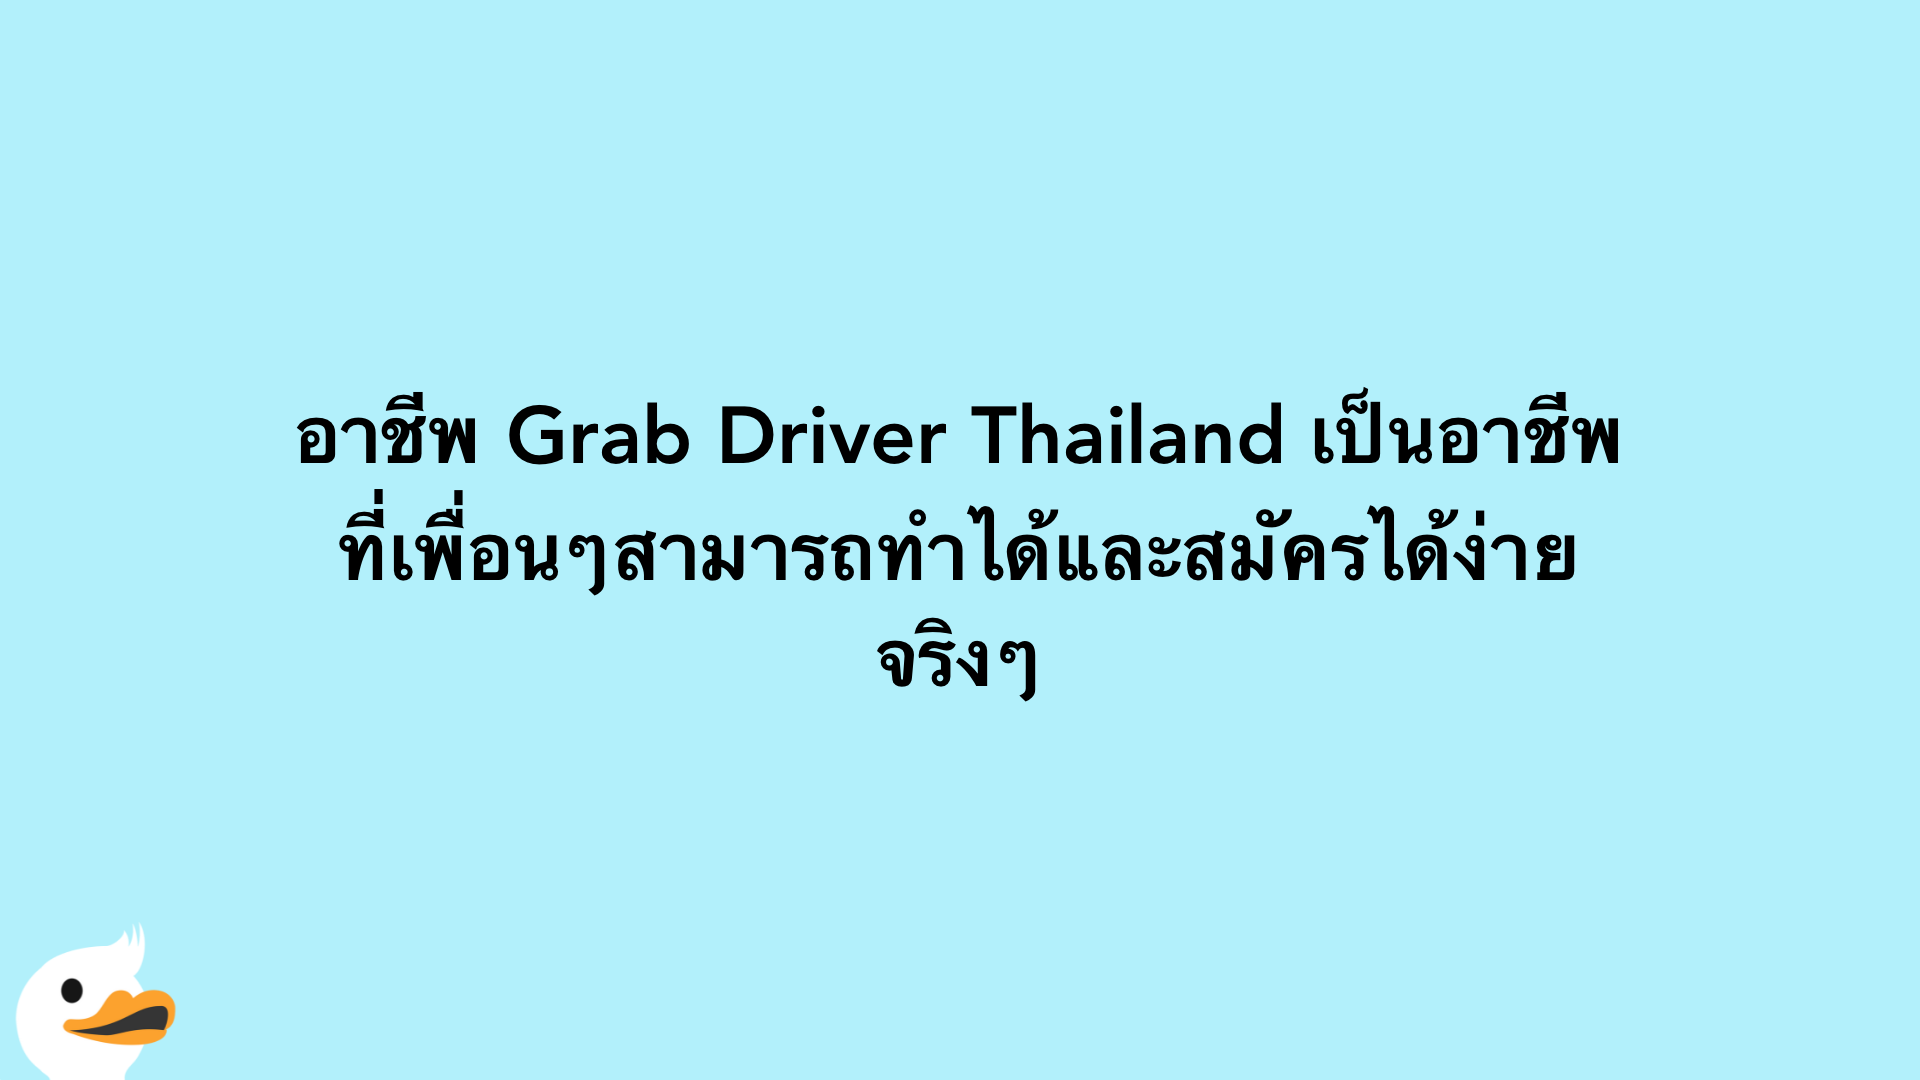 อาชีพ Grab Driver Thailand เป็นอาชีพที่เพื่อนๆสามารถทำได้และสมัครได้ง่ายจริงๆ